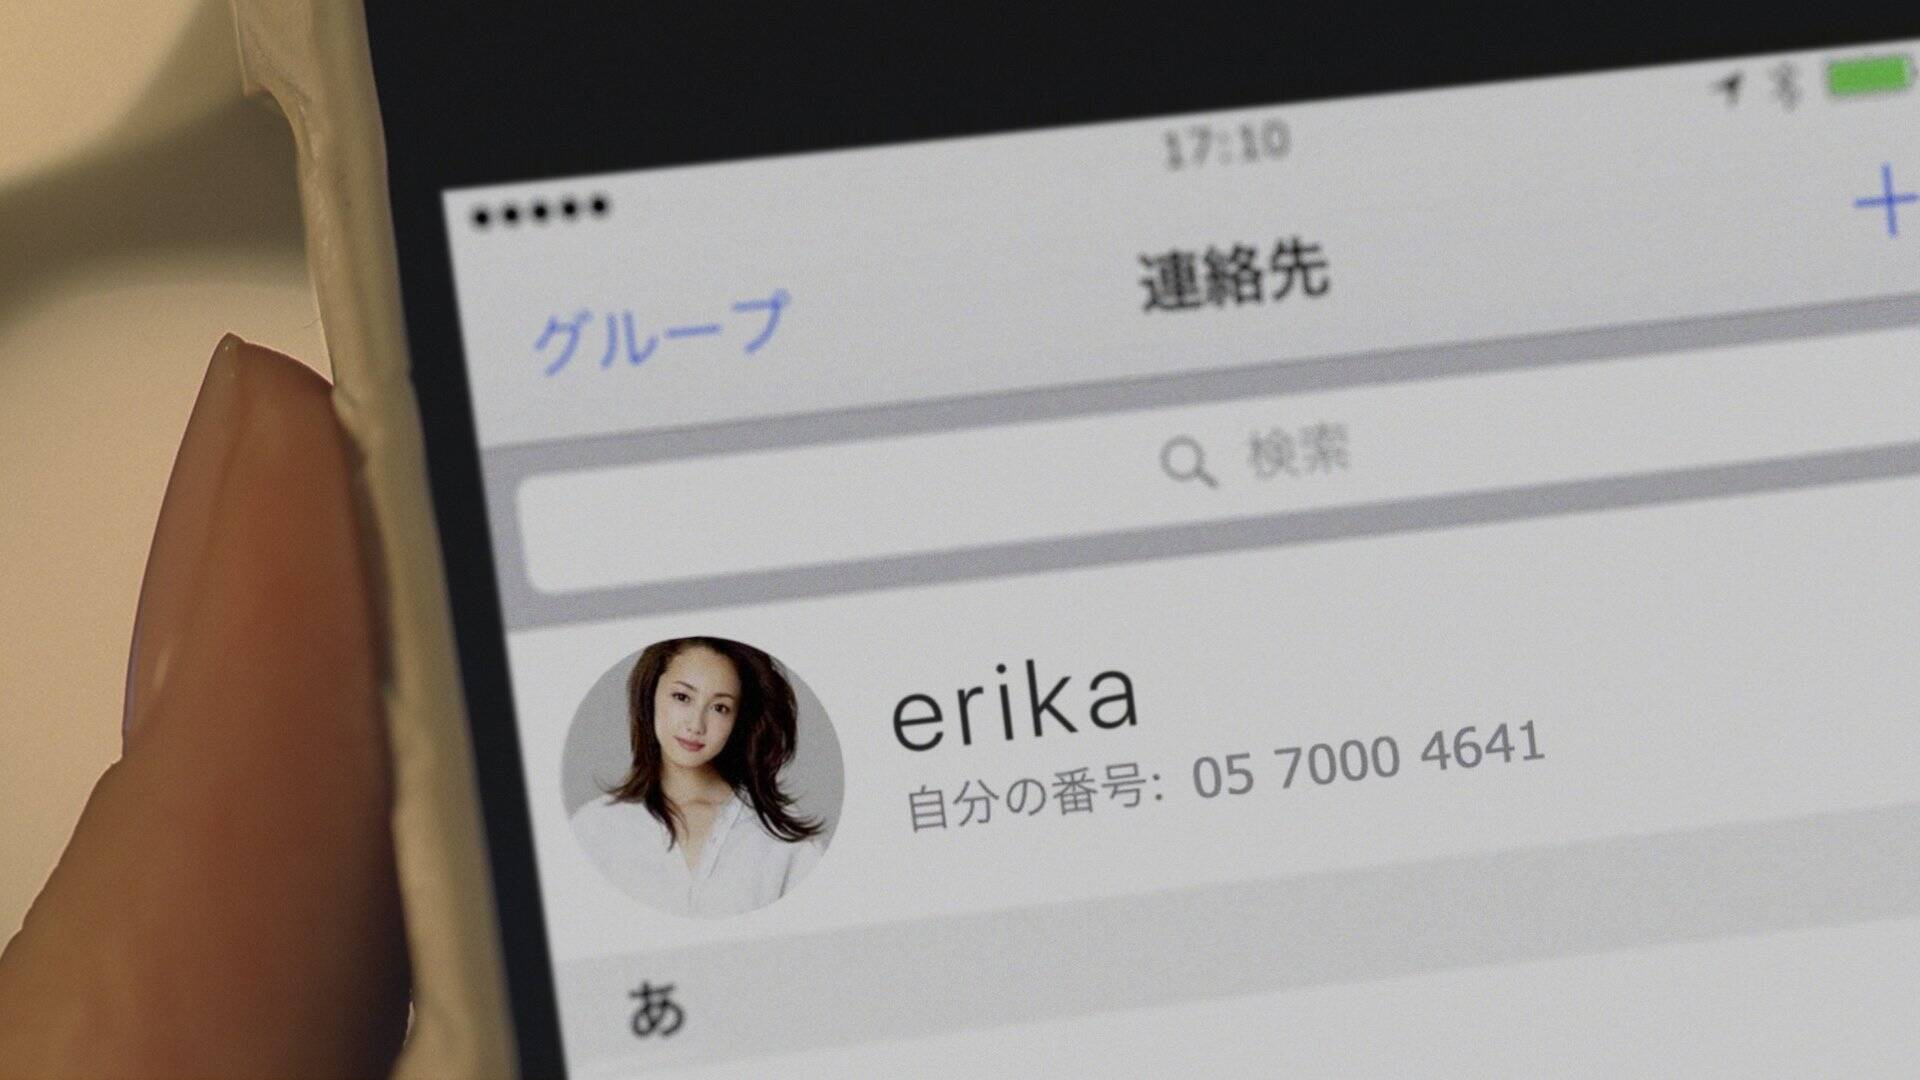 沢尻エリカの電話番号が流出 試しにかけてみた結果 17年3月7日 エキサイトニュース